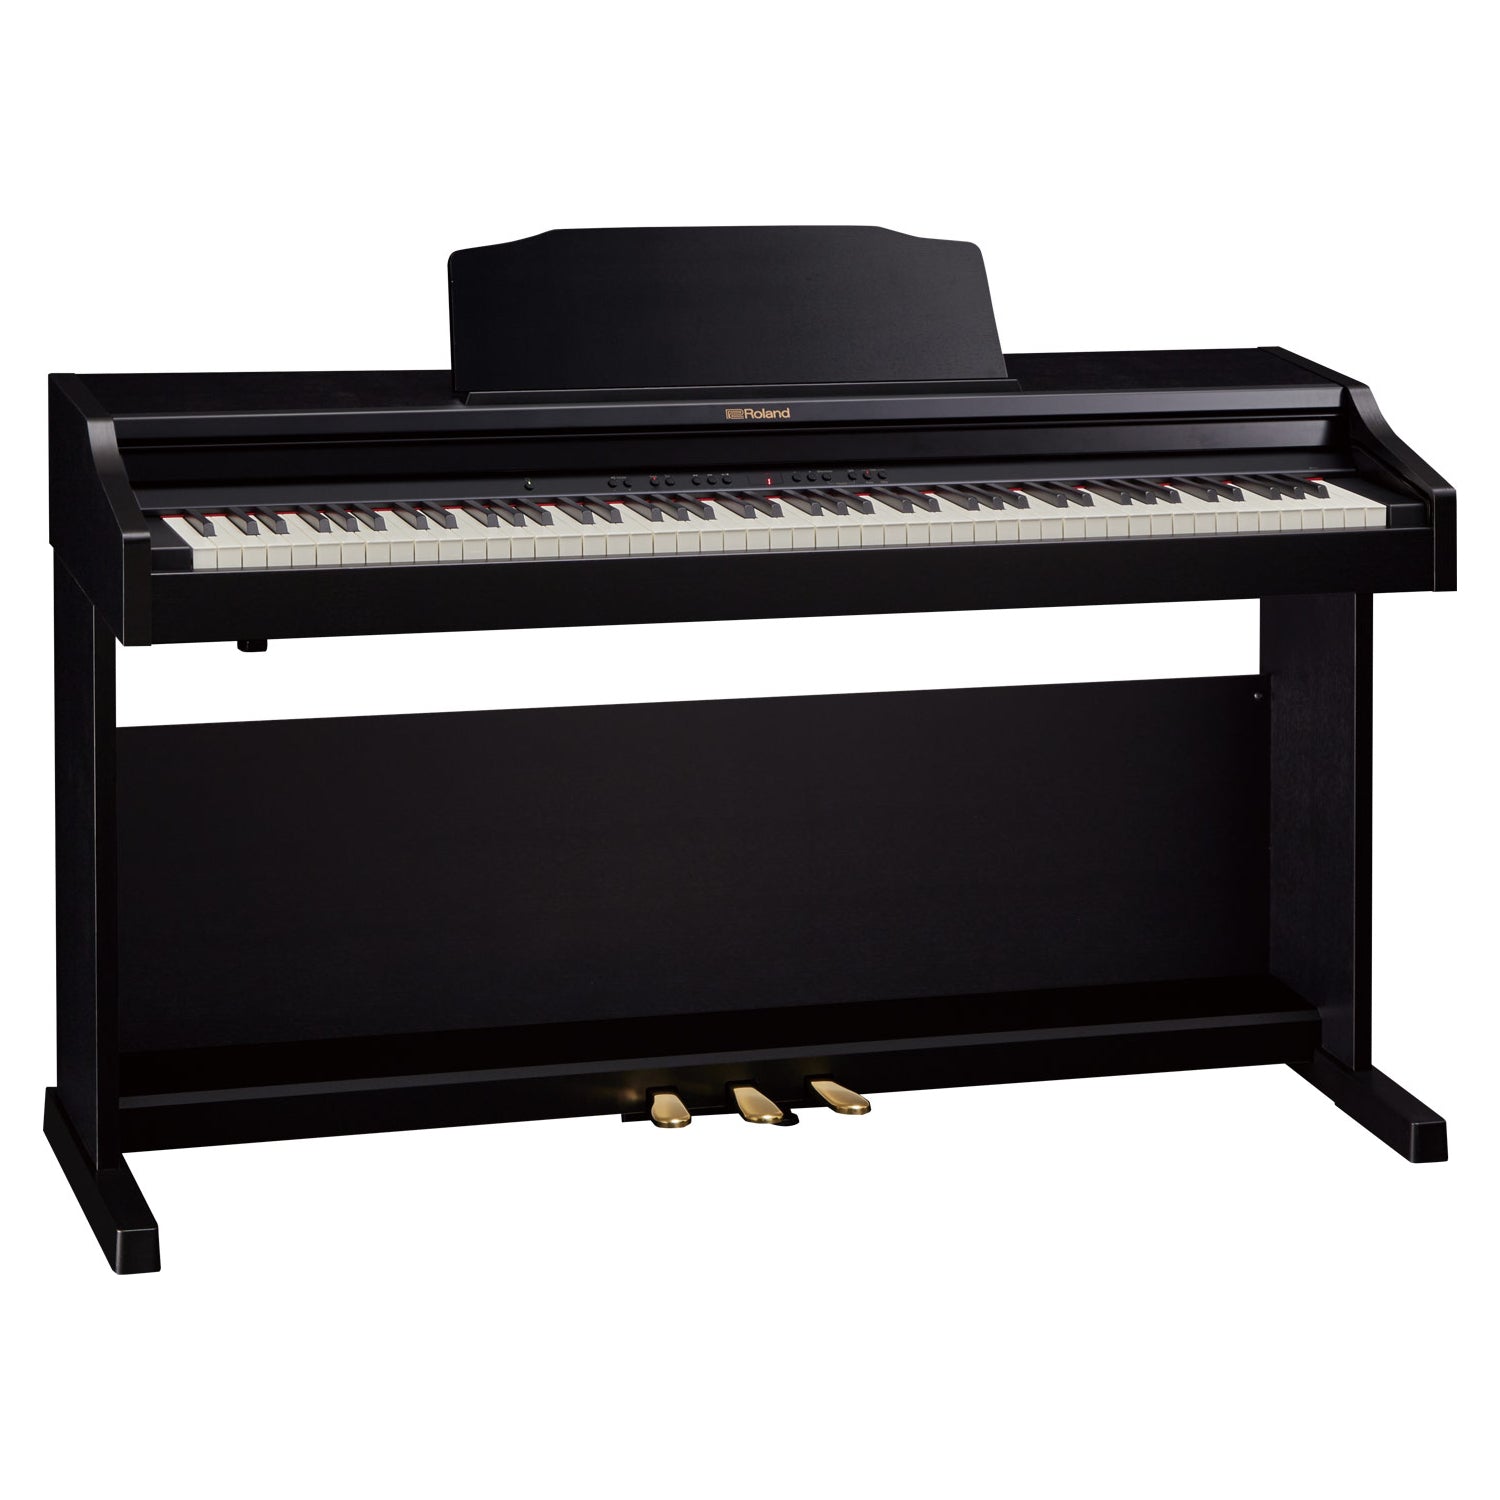 Đàn Piano Điện Roland RP302